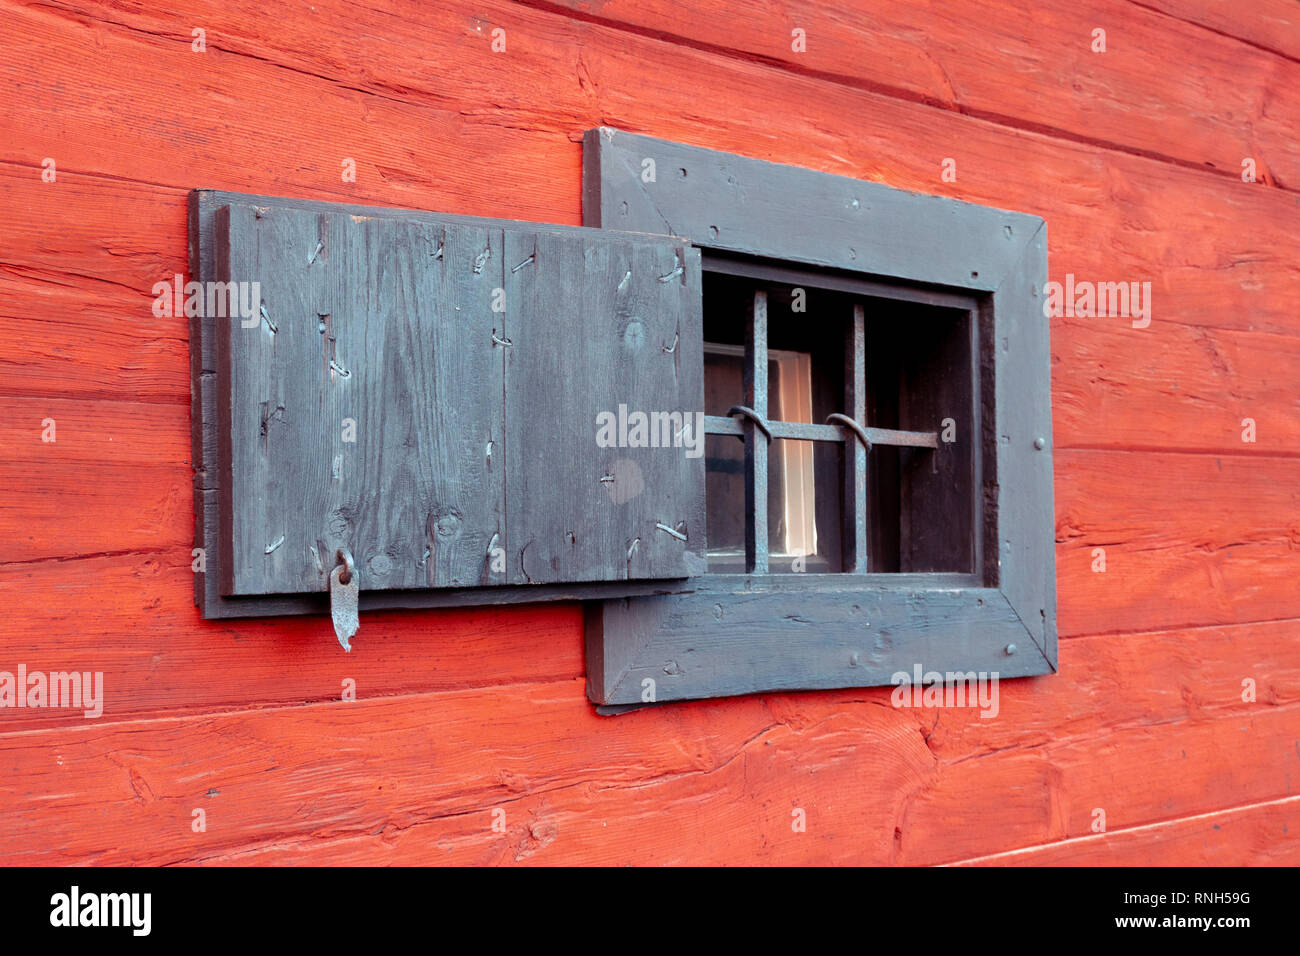 Contraventanas de seguridad exterior en una vieja casa de madera